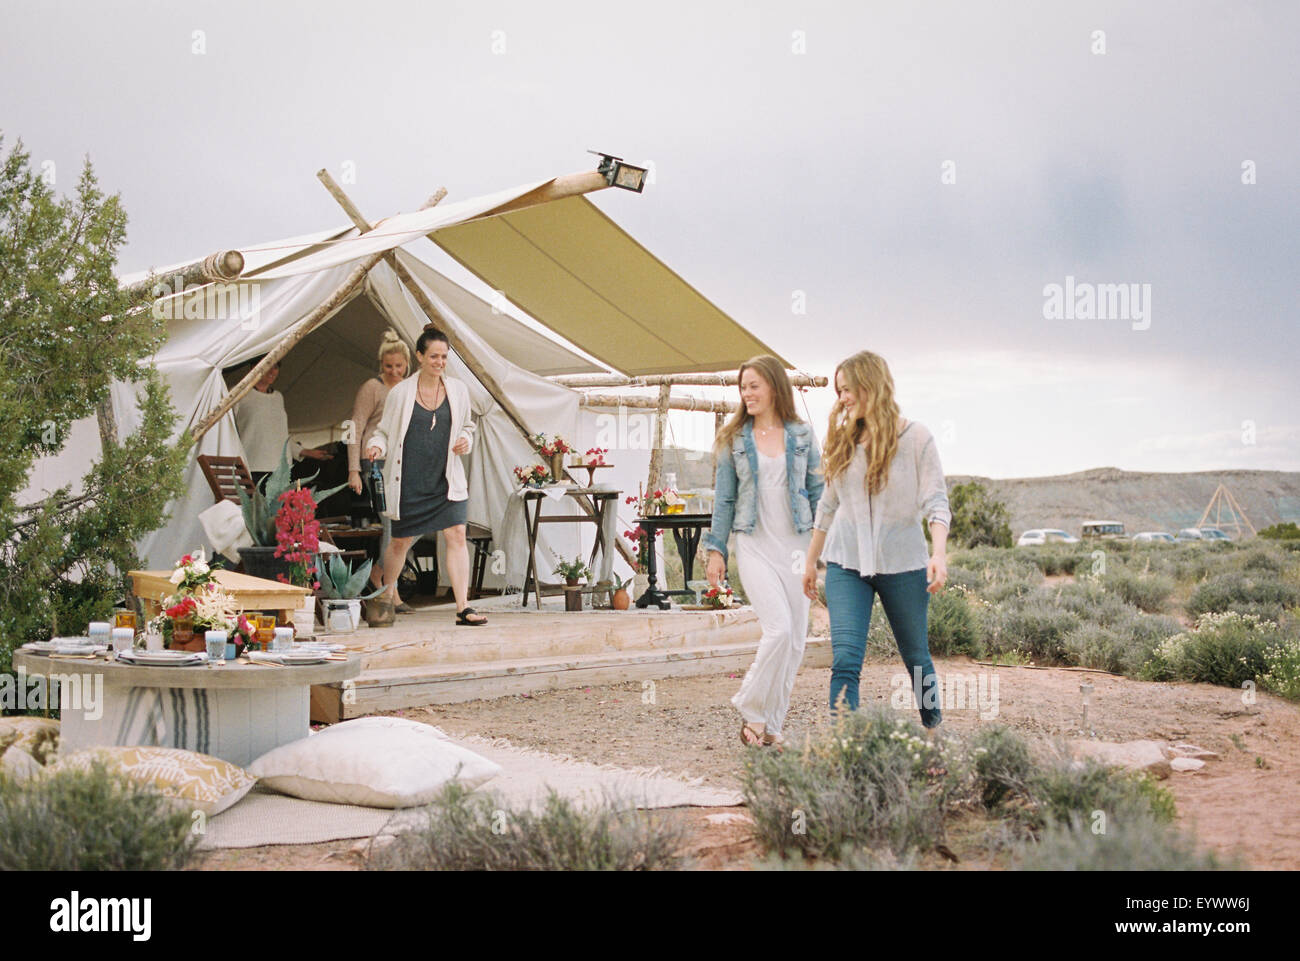 Grupo de amigos disfrutando de una comida al aire libre en un desierto, una carpa en el fondo. Foto de stock